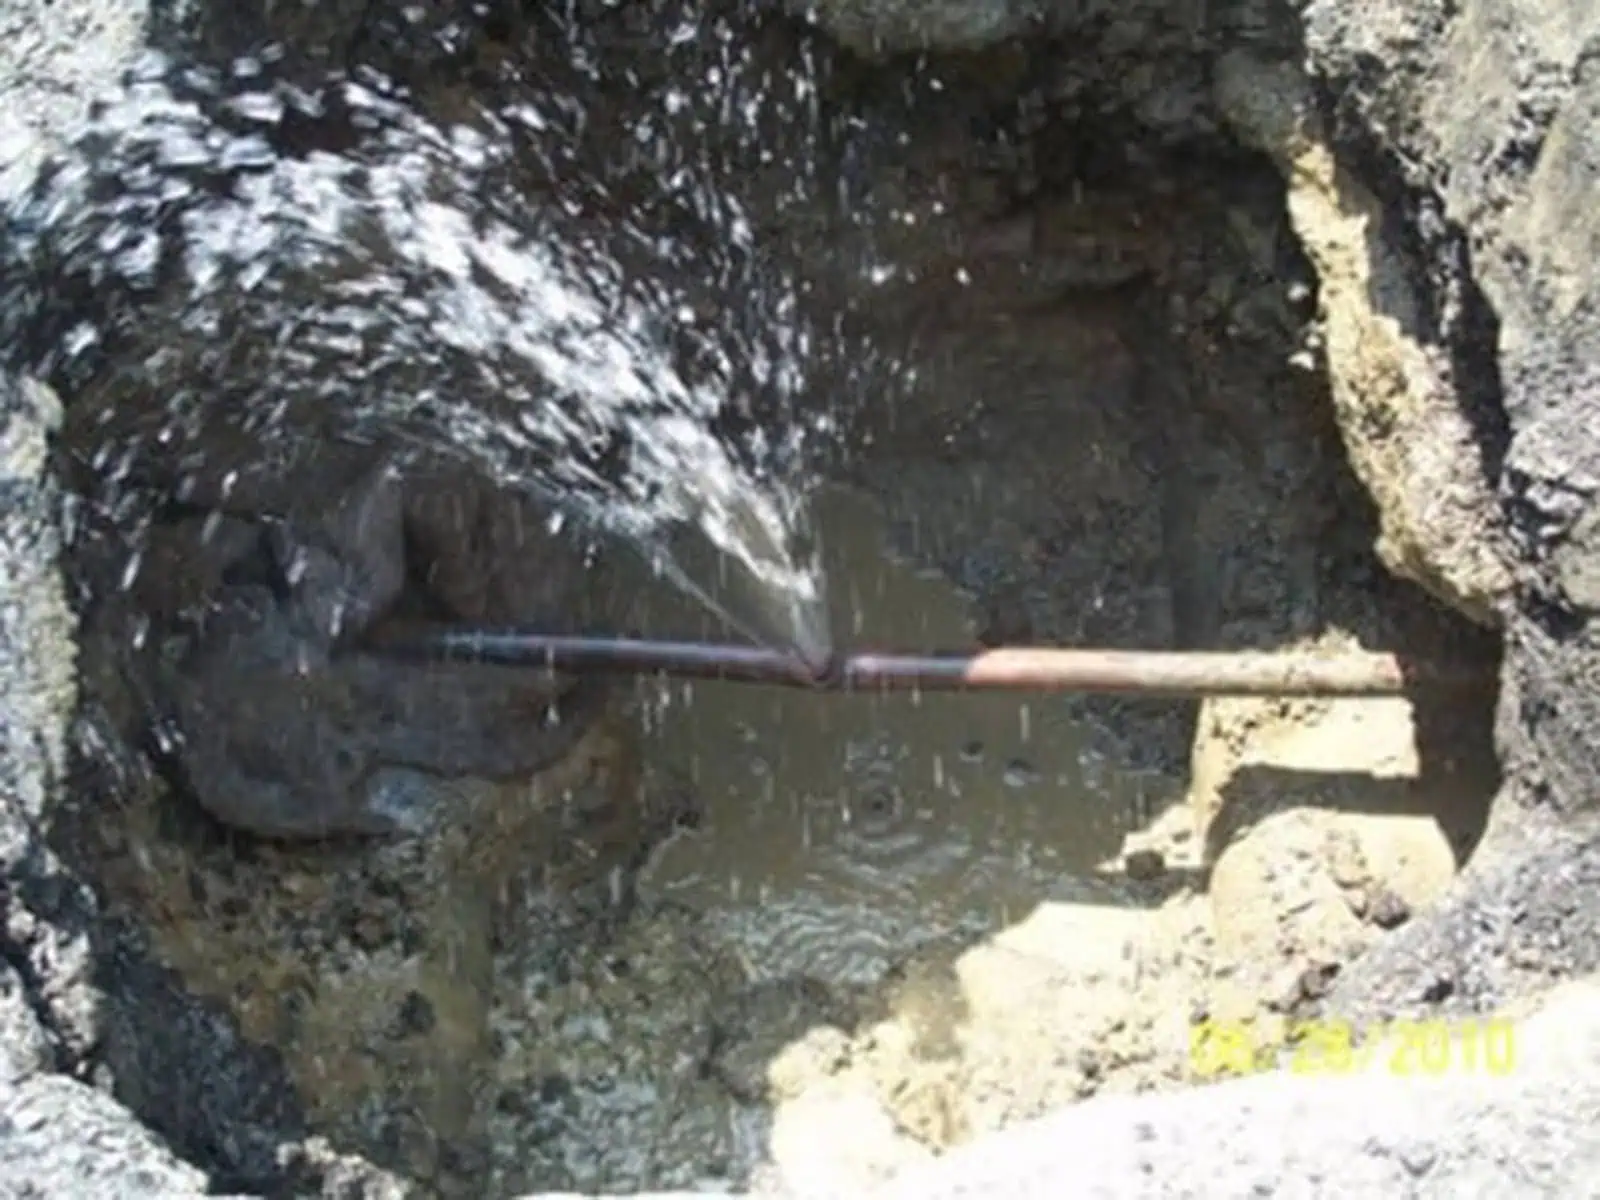 Underground copper main water line leak. 